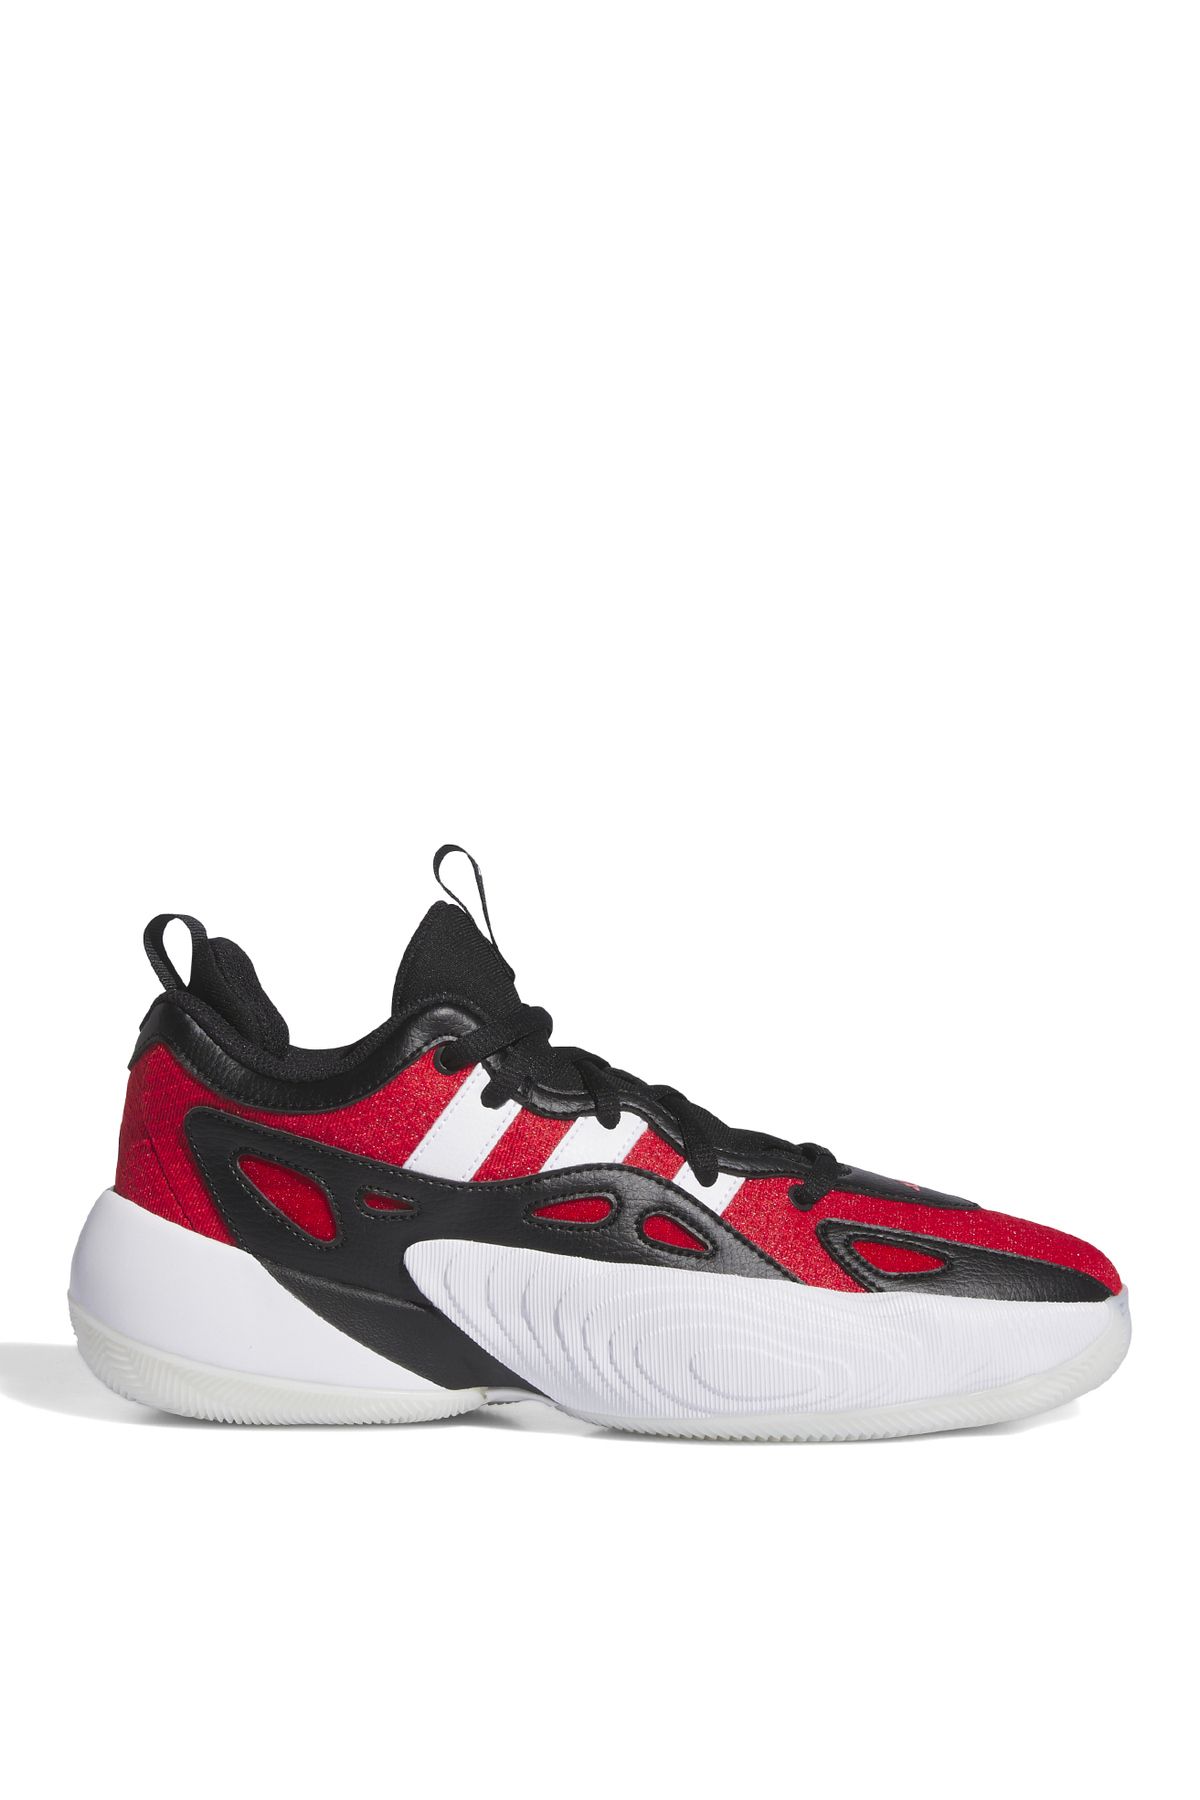 adidas Basketbol Ayakkabısı, 46, Kırmızı